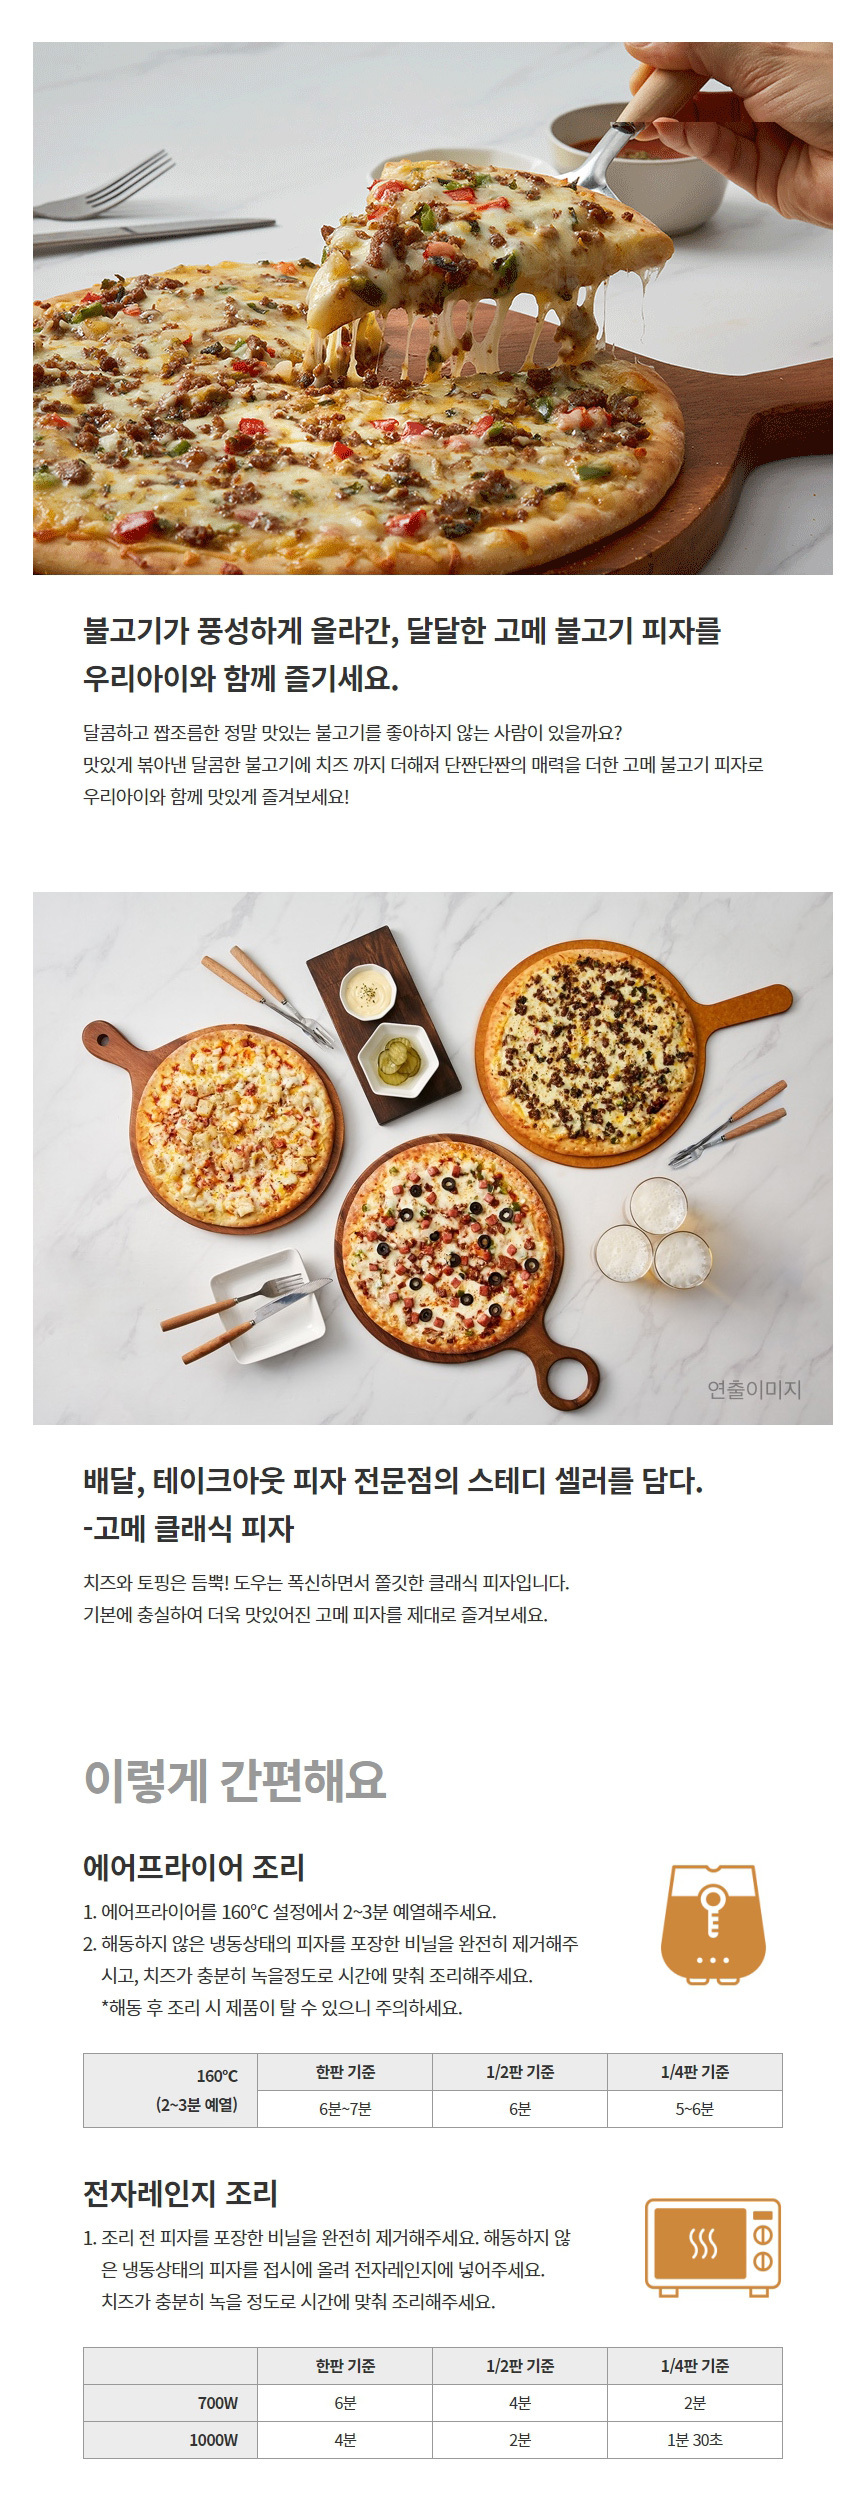 韓國食品-[CJ] Gourmet 불고기 피자 405g